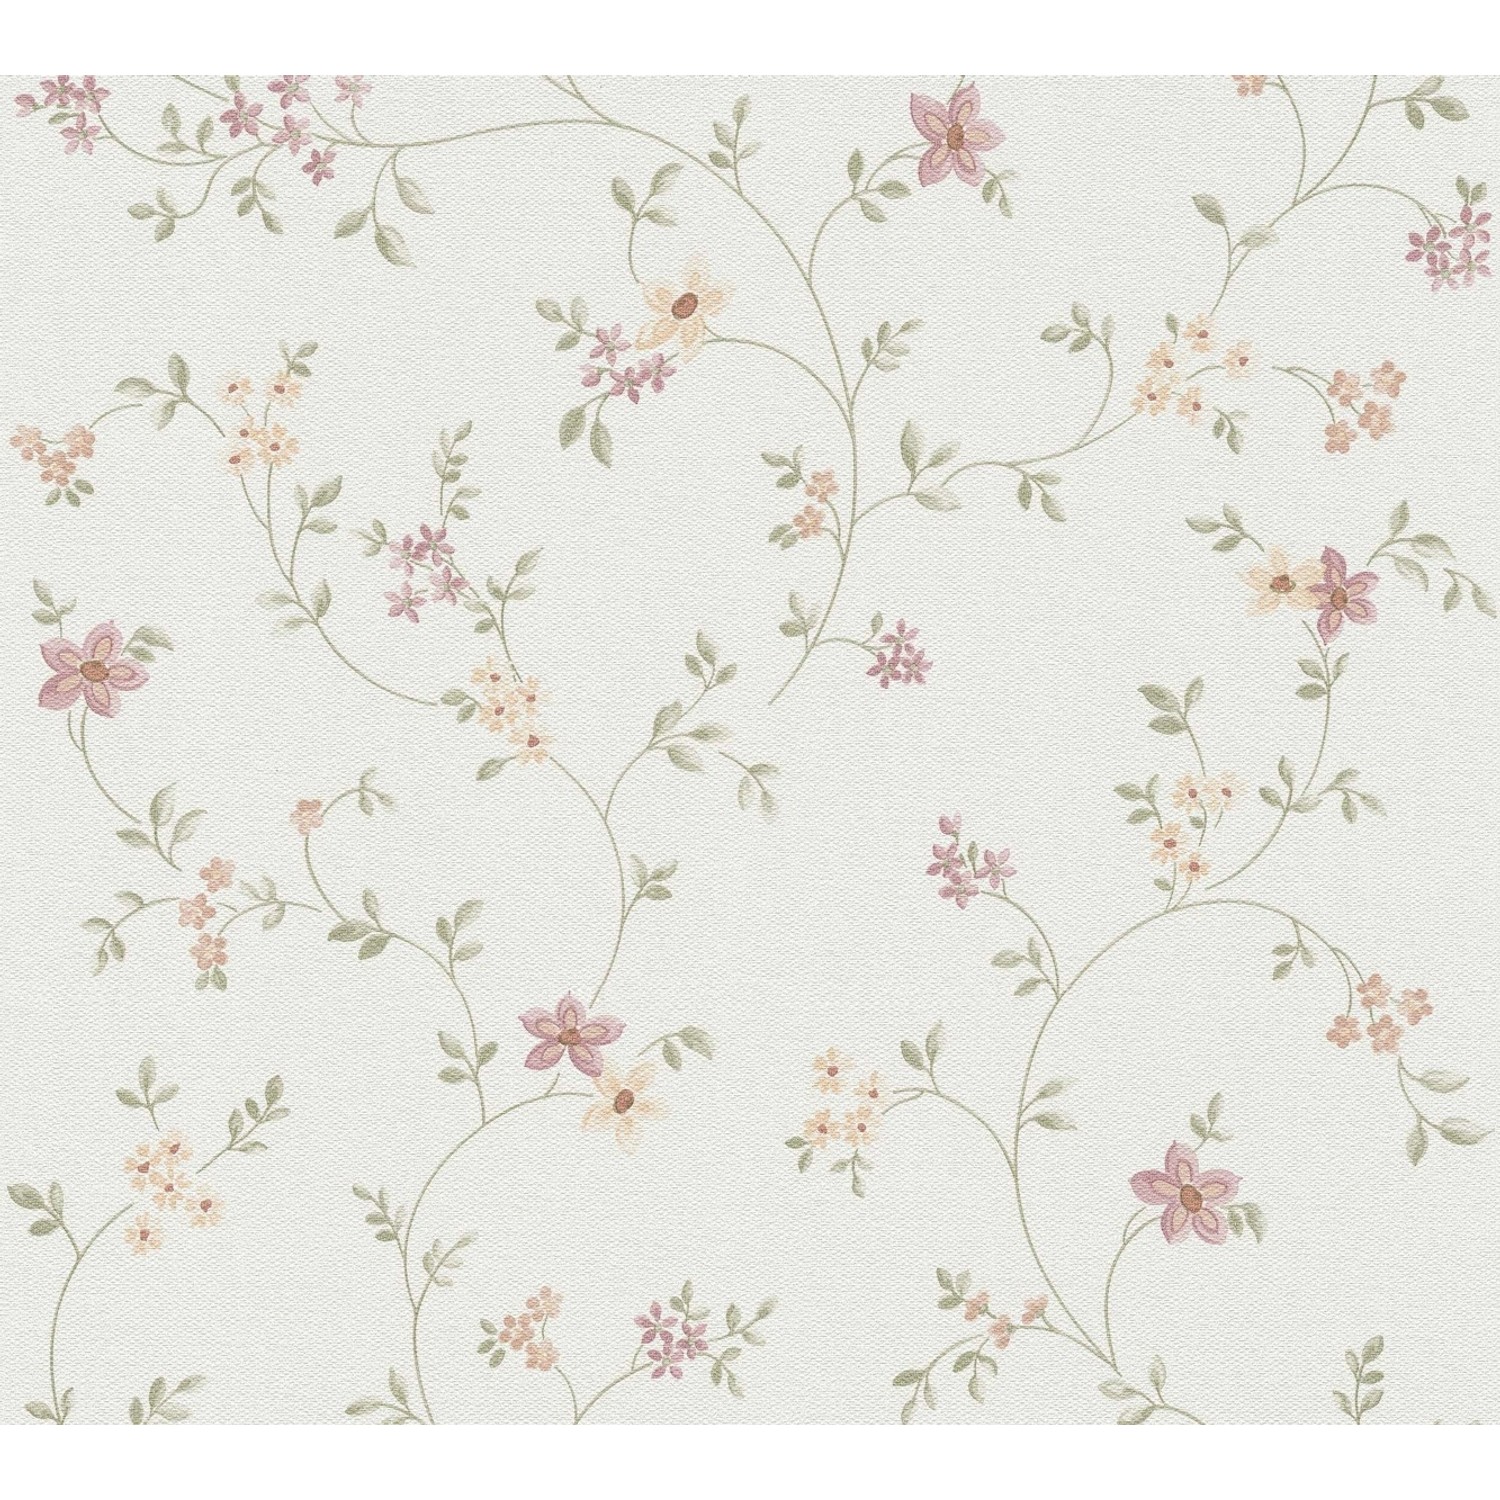 Image of Bricoflor Landhaus Tapete mit Blumen Weiß Rosa Grün Blümchentapete im Vintage Stil Vliestapete mit Blumen Muster Romantisch